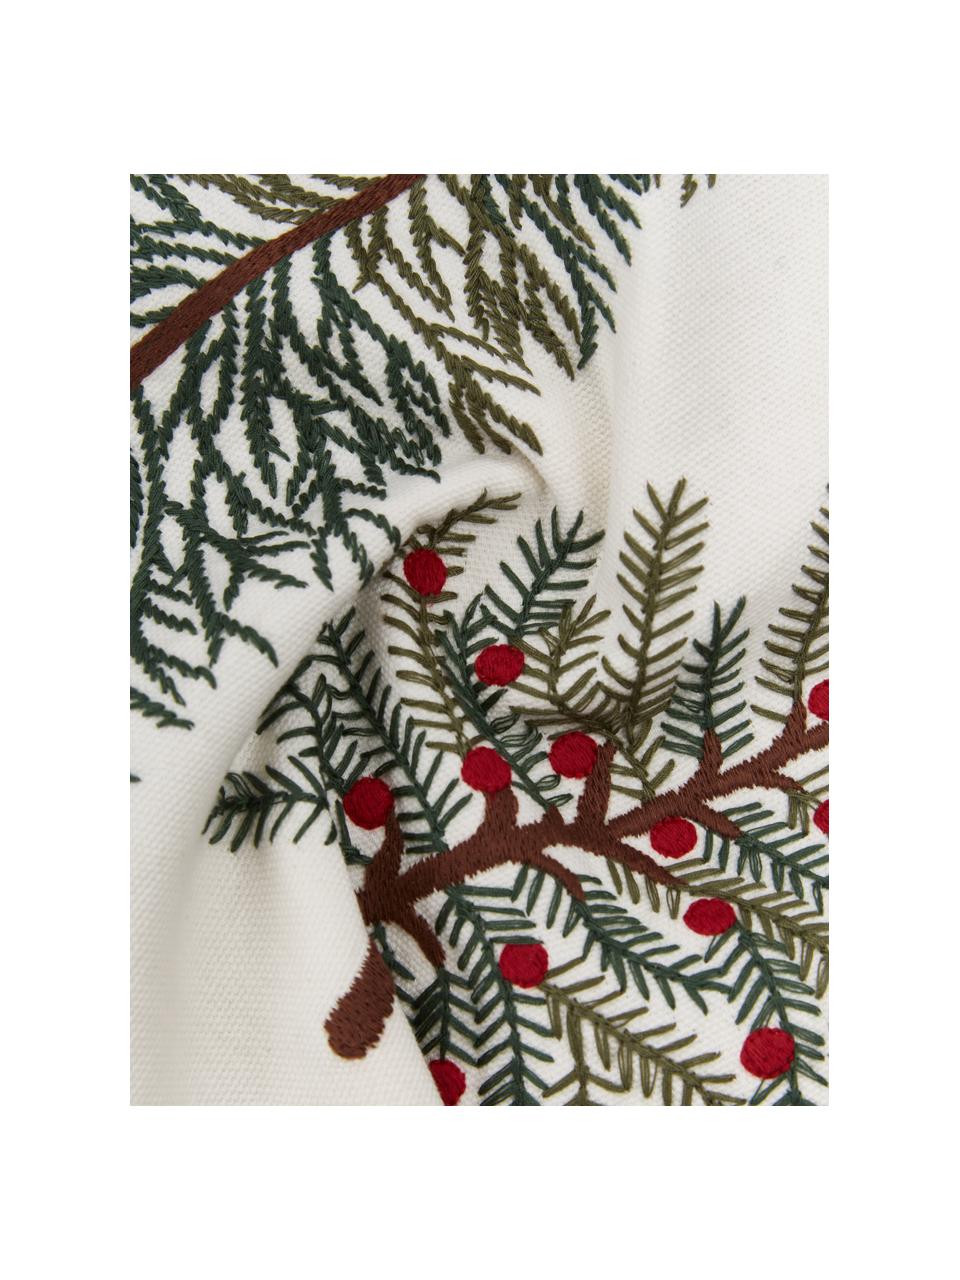 Federa arredo rettangolare ricamata con motivo invernale Fenna, 100% cotone, Verde scuro, bianco crema, rosso, Larg. 30 x Lung. 50 cm